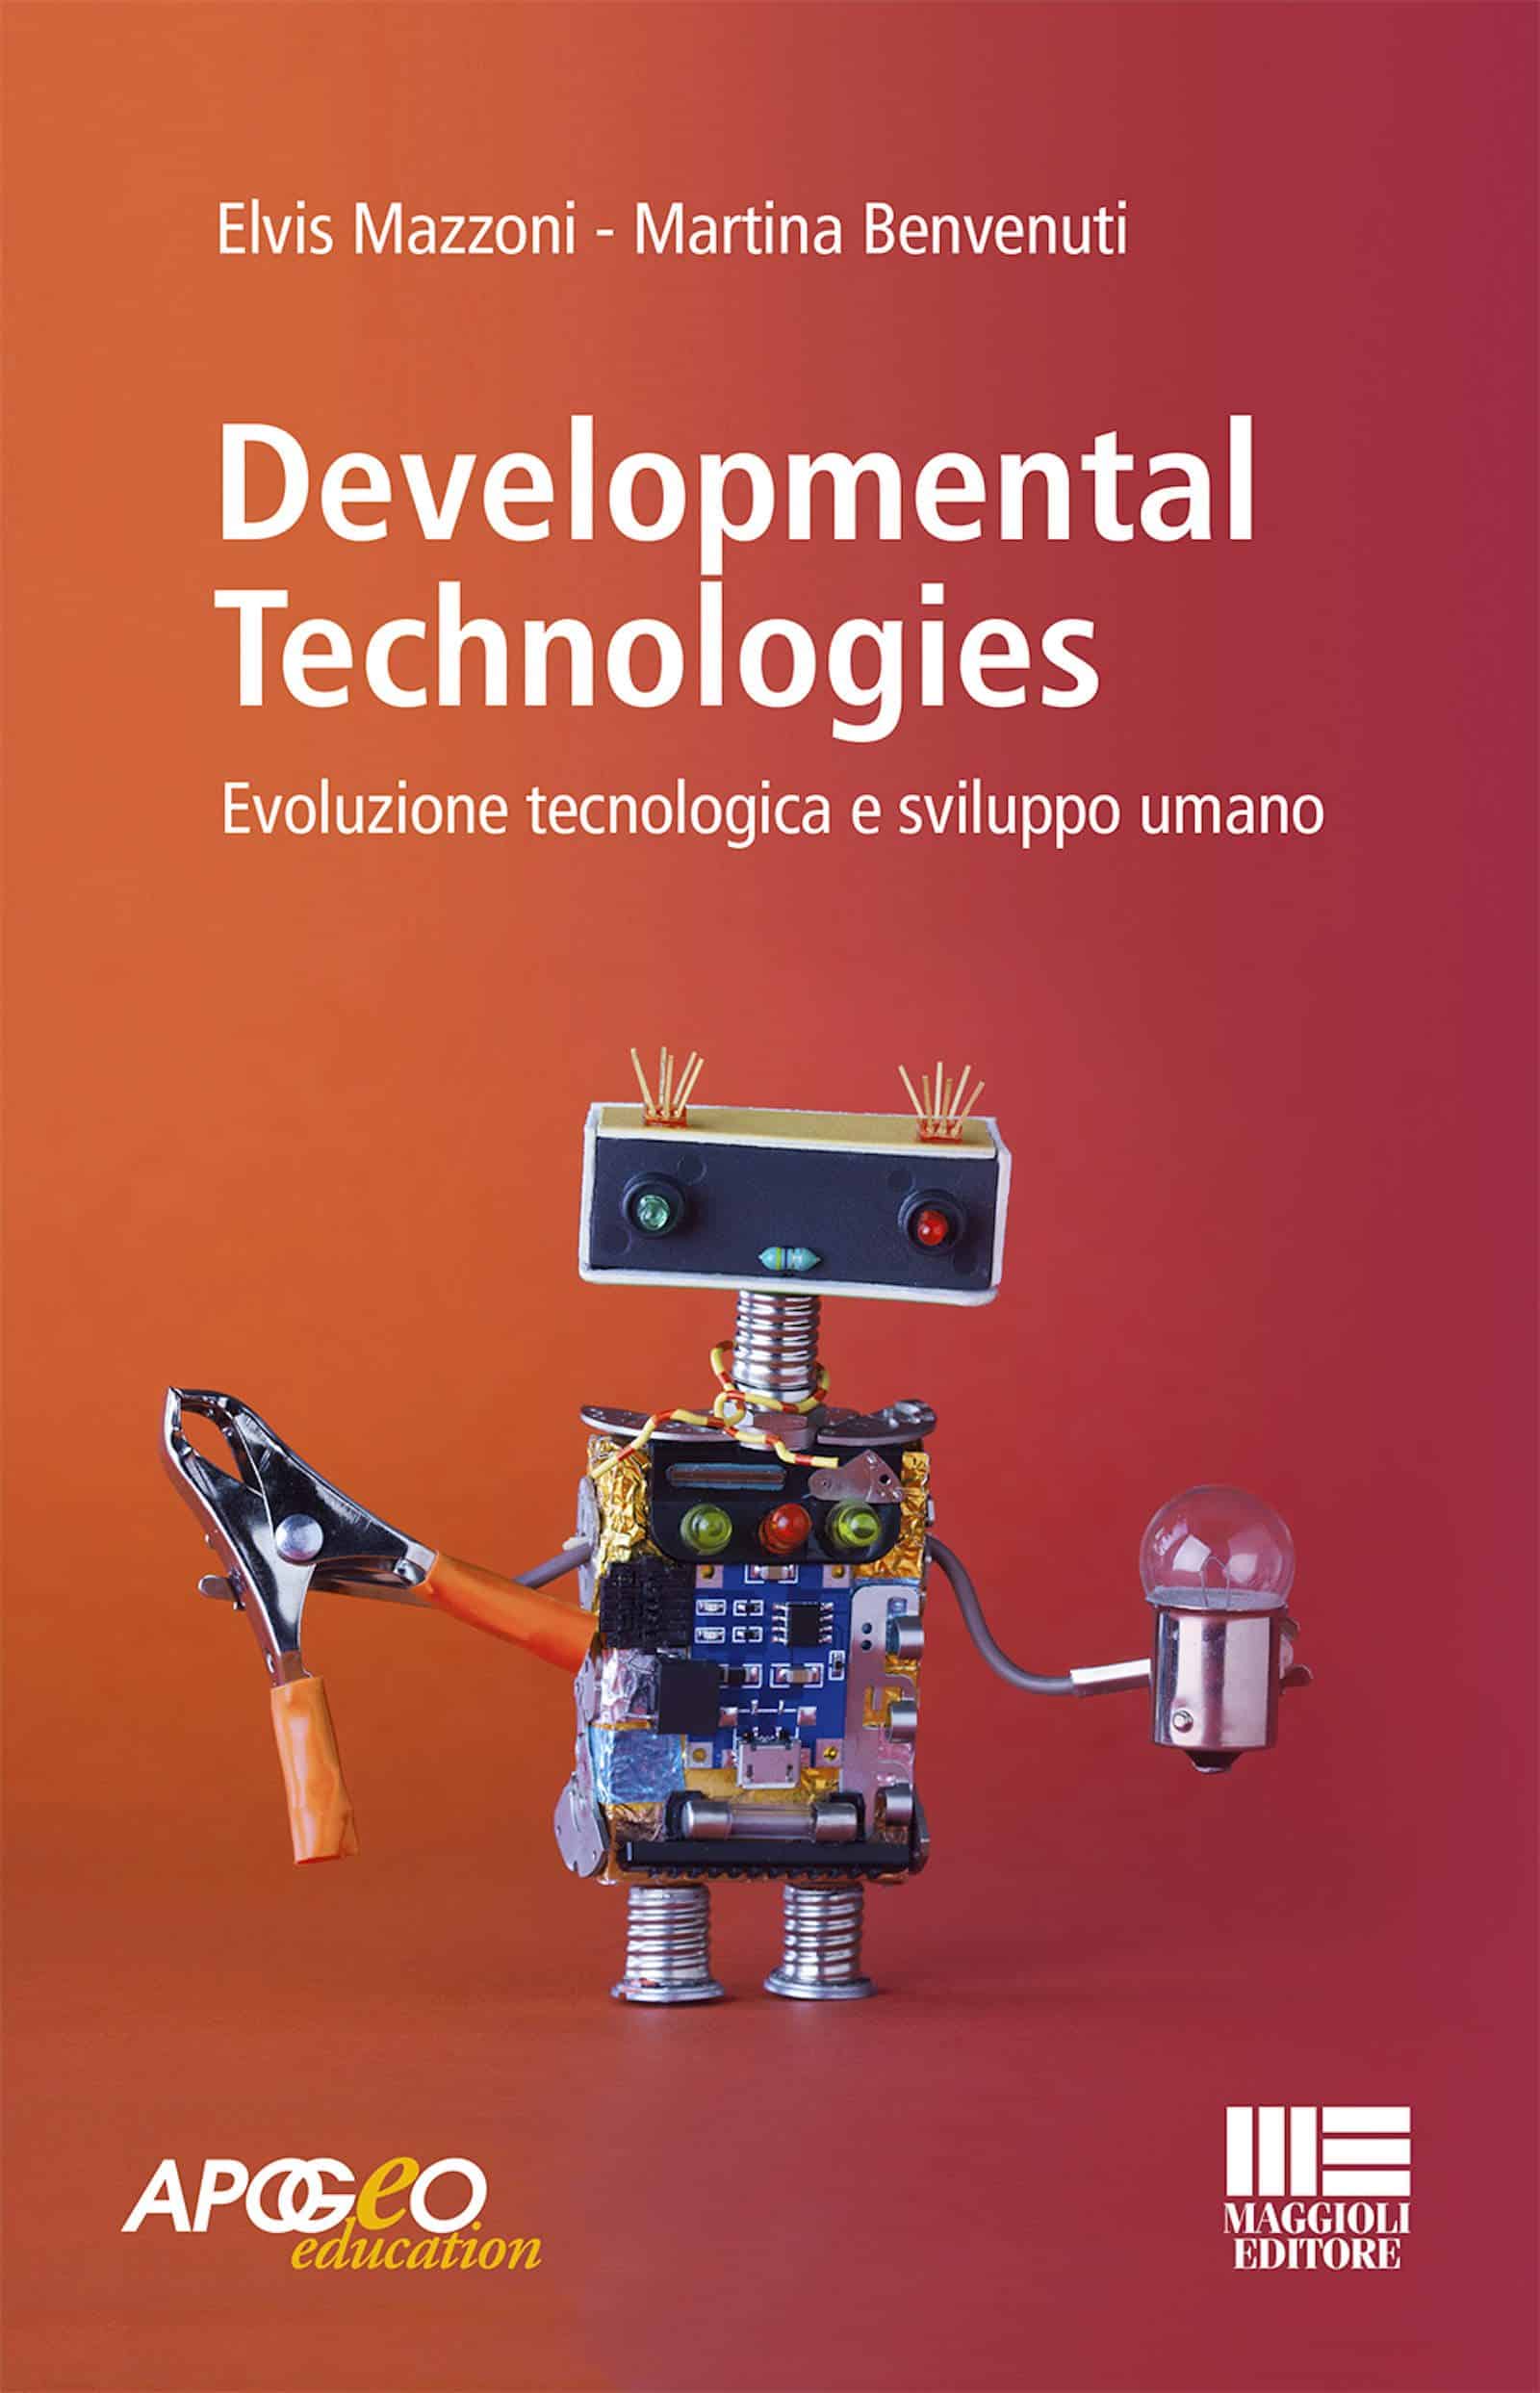 Developmental technologies 2019 di Mazzoni e Benvenuti Recensione Featured